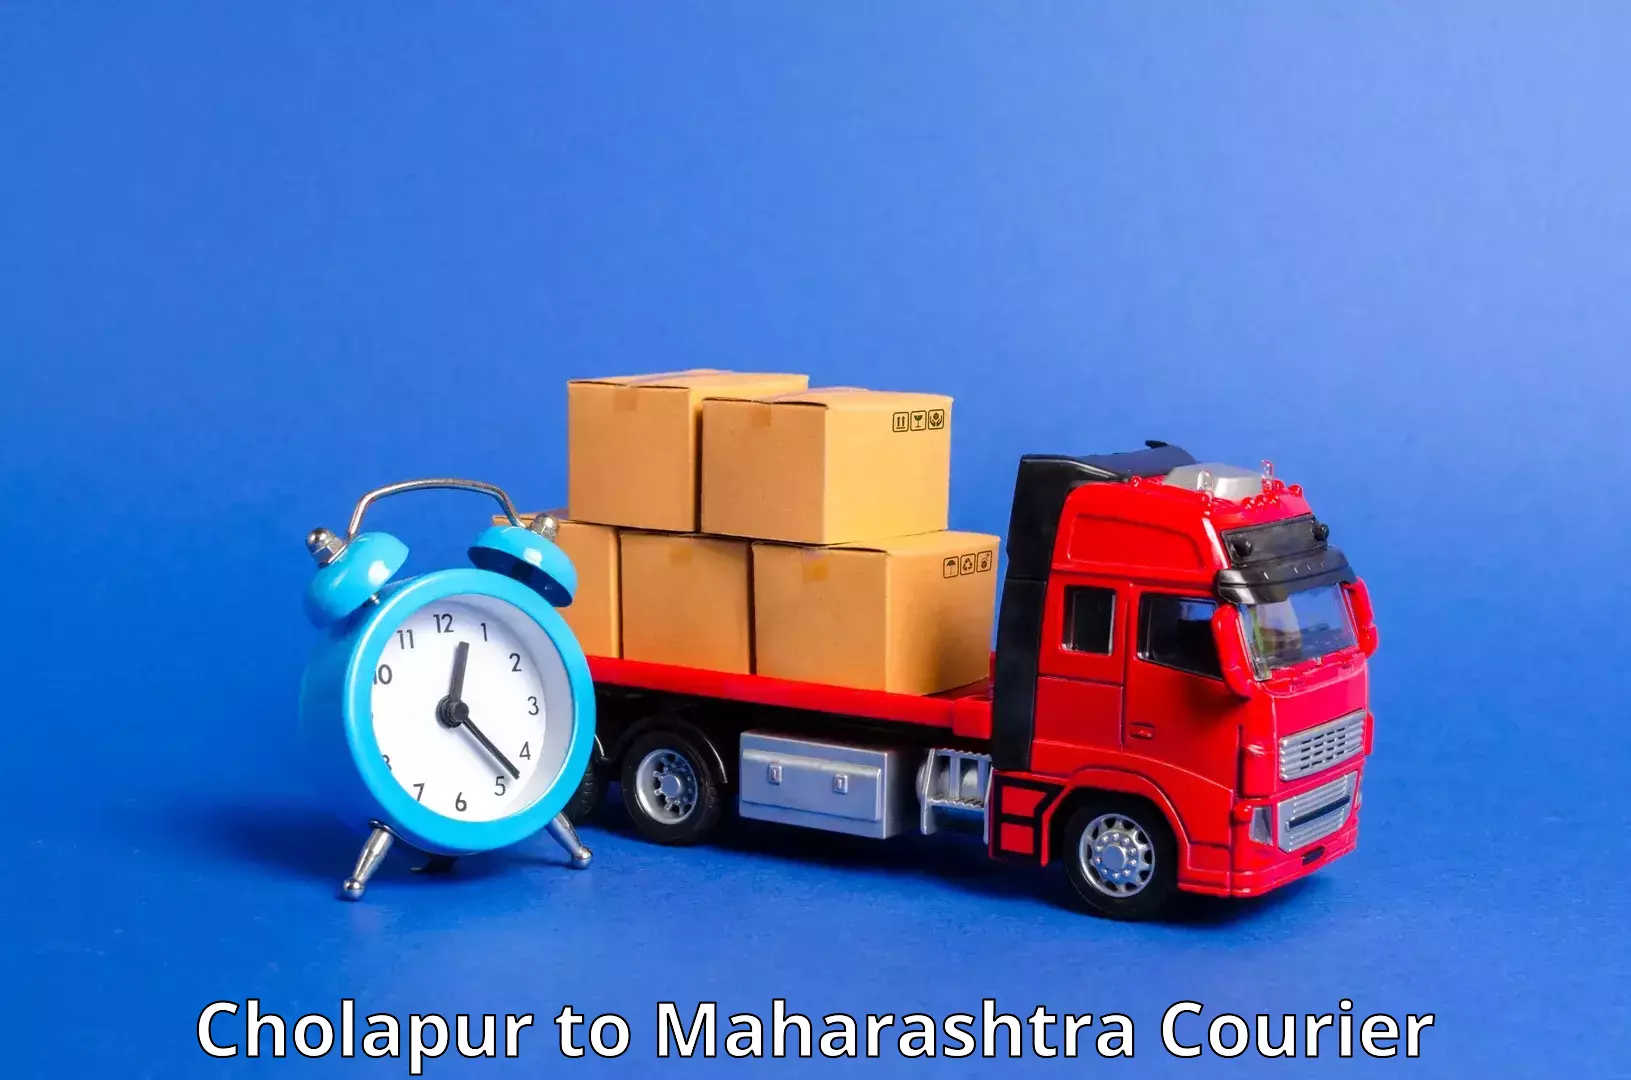 Cargo delivery service Cholapur to Maharashtra